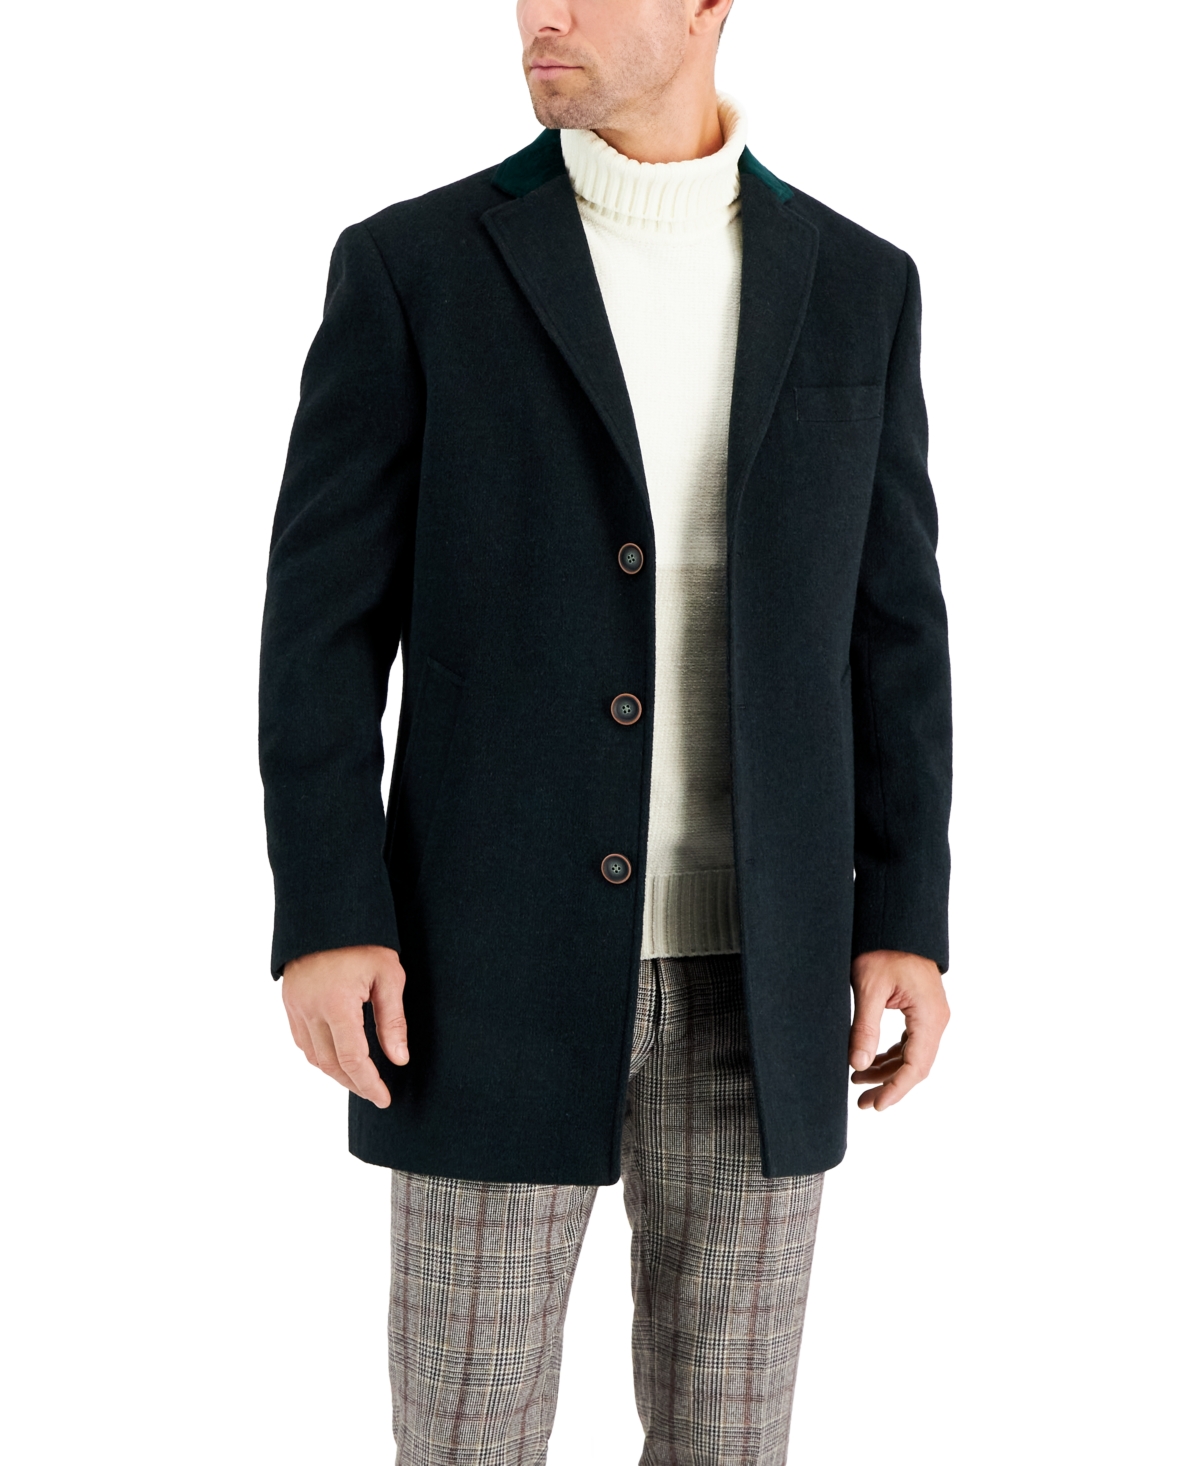 Men's Wool Blend Solid Overcoat - Teal